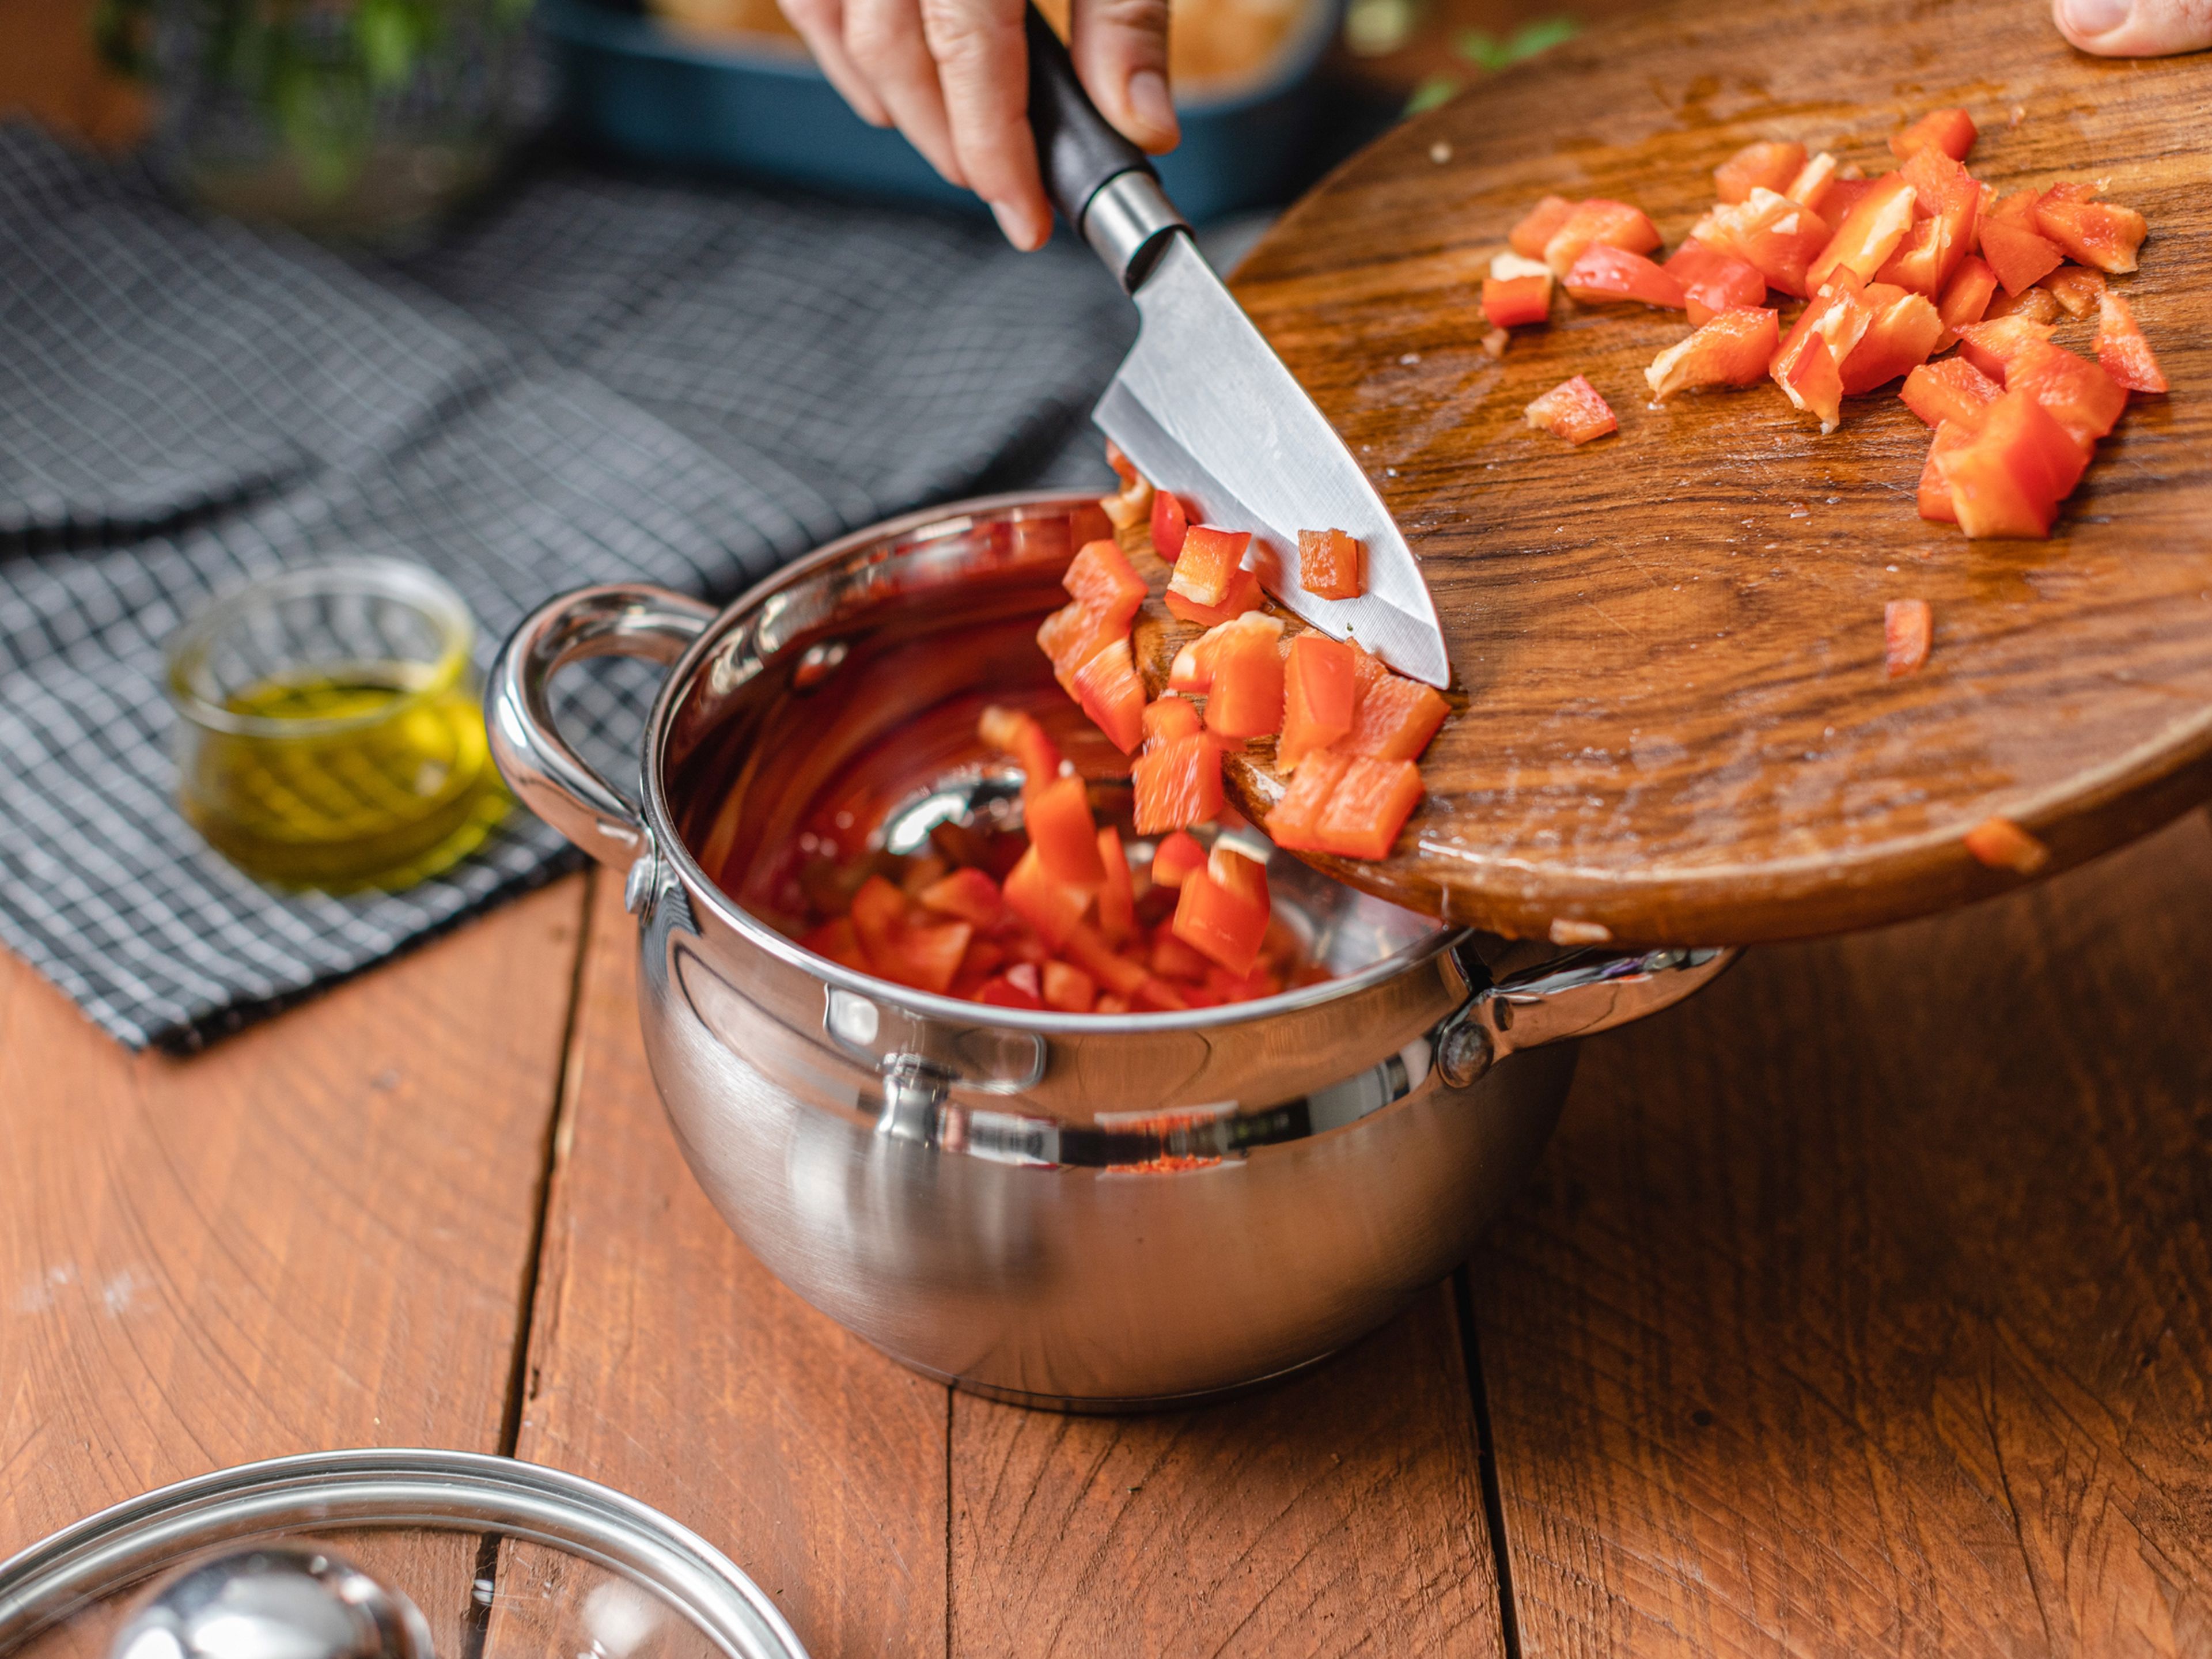 Die Paprika grob schneiden und mit Essig, Wasser, Zucker und fein gehackter Chili aufkochen. Anschließend für 40 Minuten zugedeckt köcheln lassen.